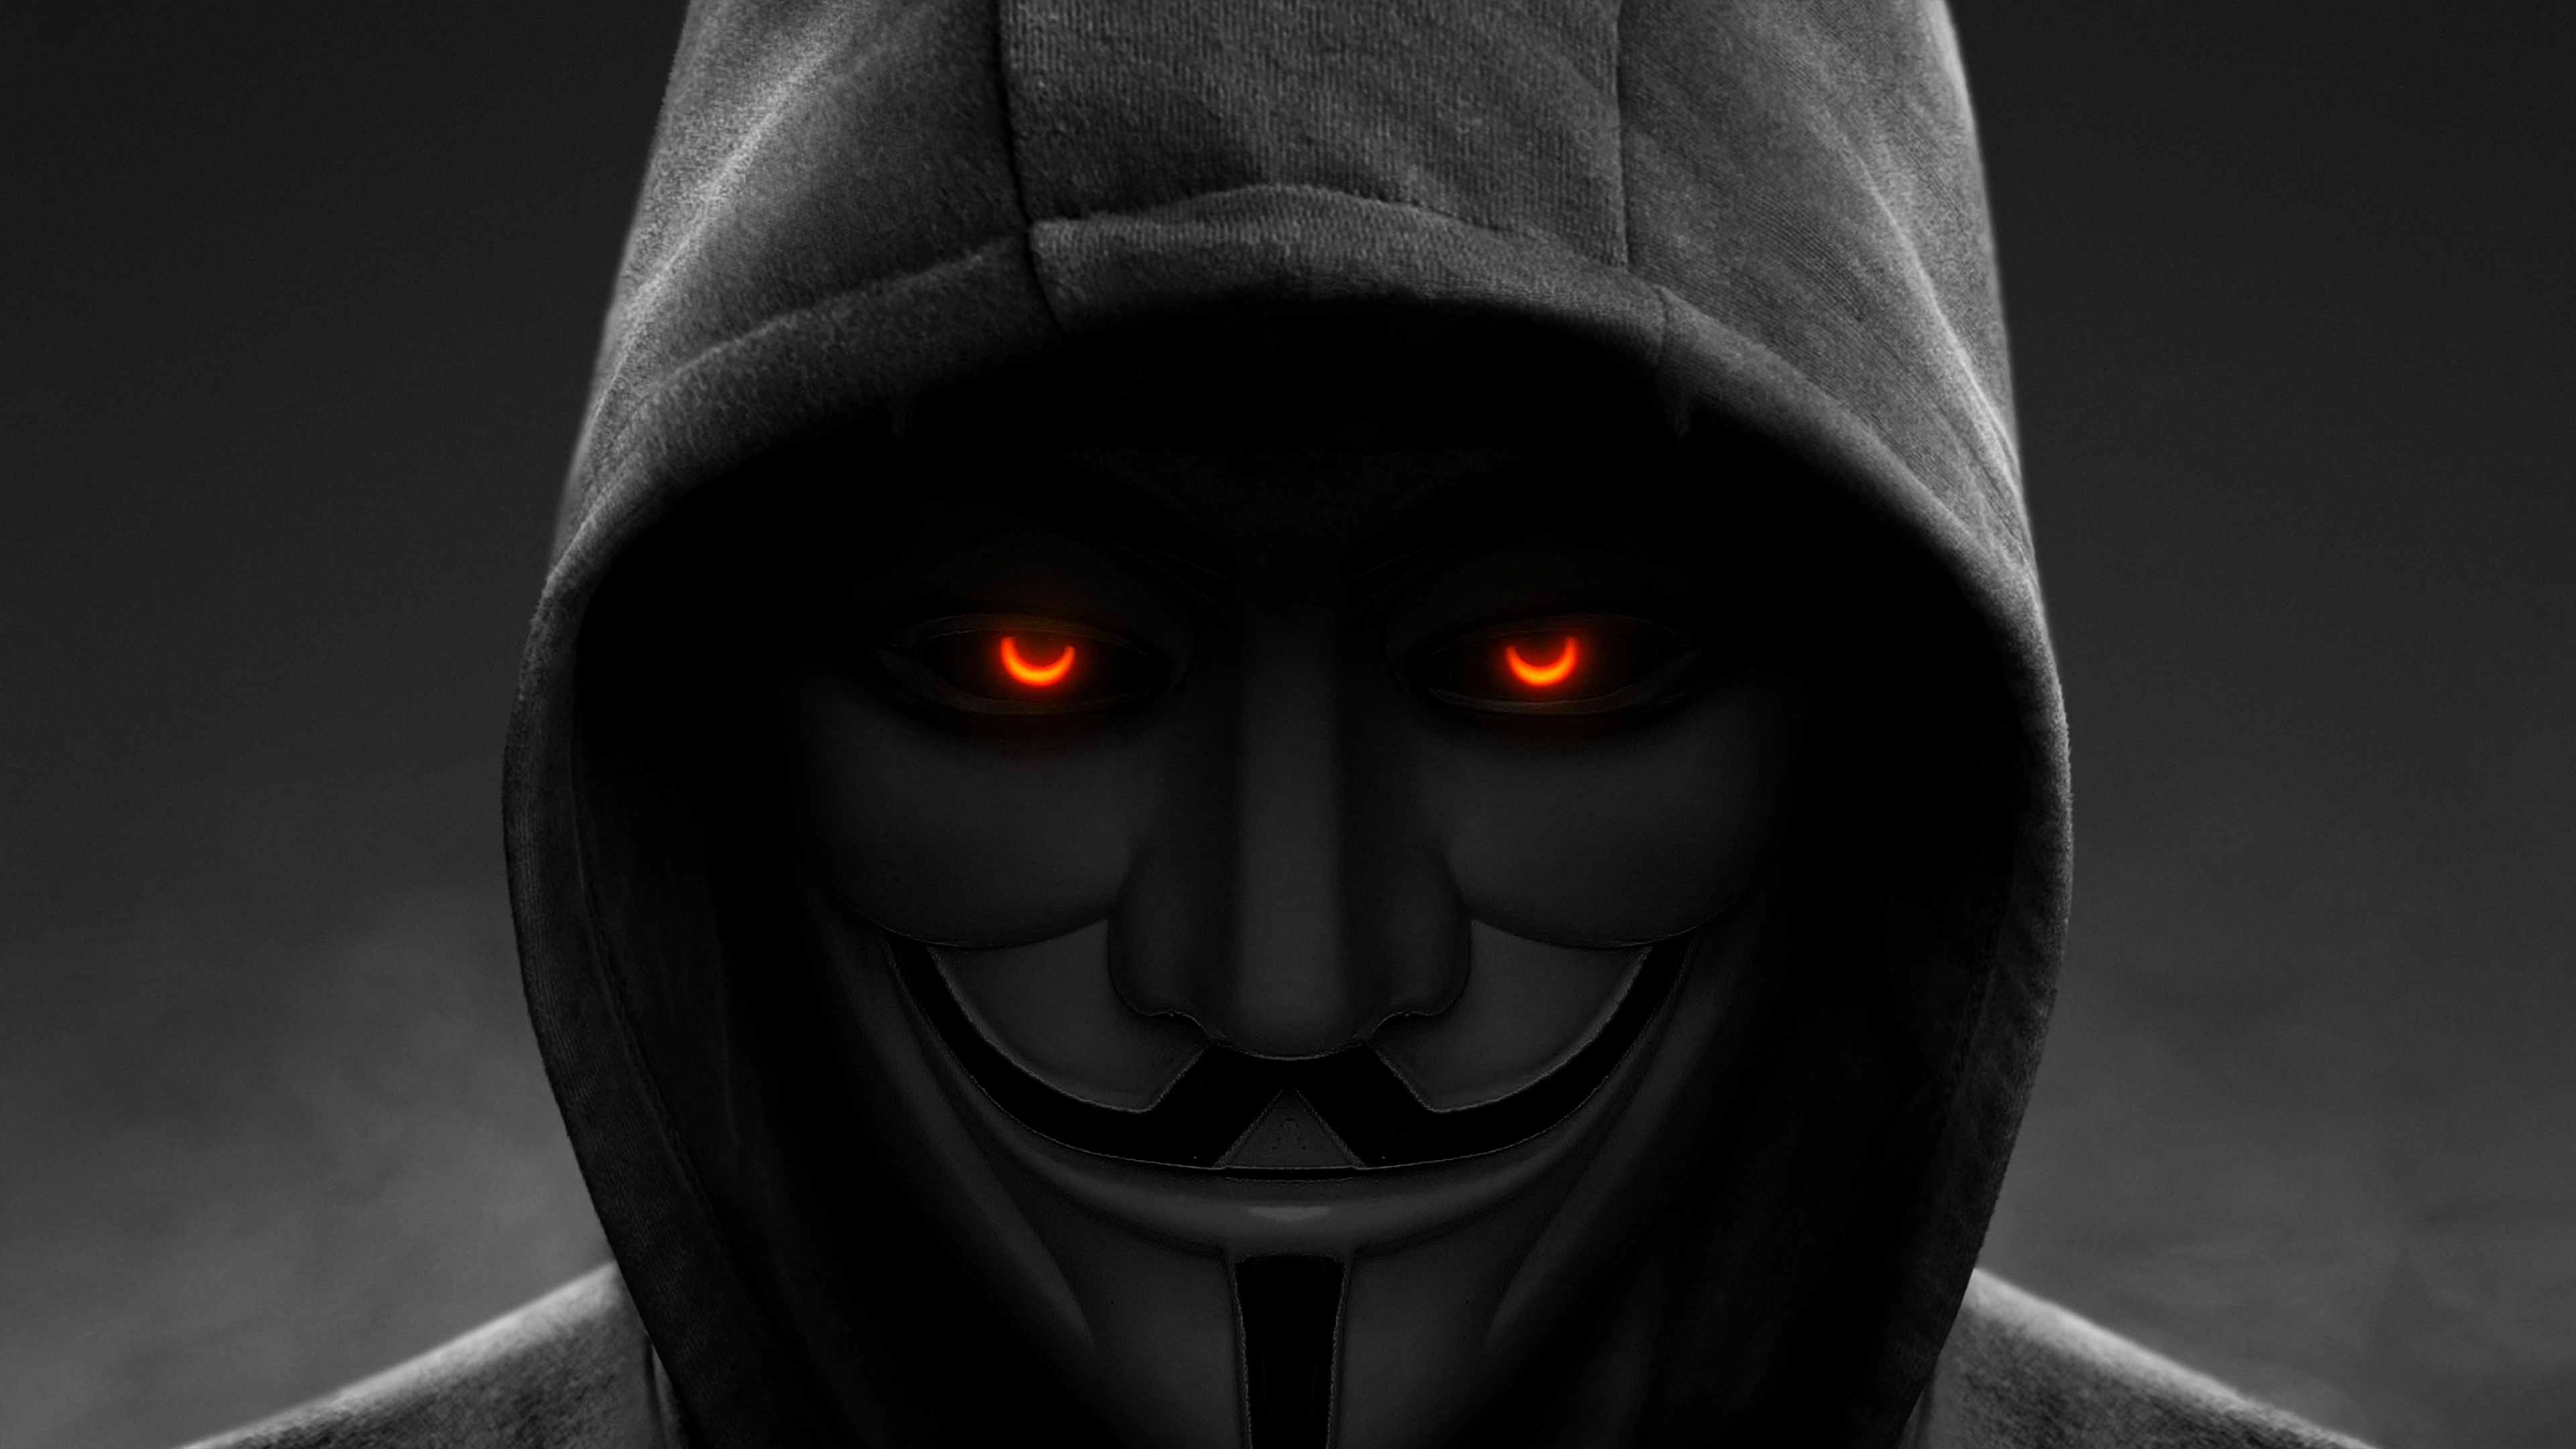 anonymous hoodie good or bad 3n.jpg